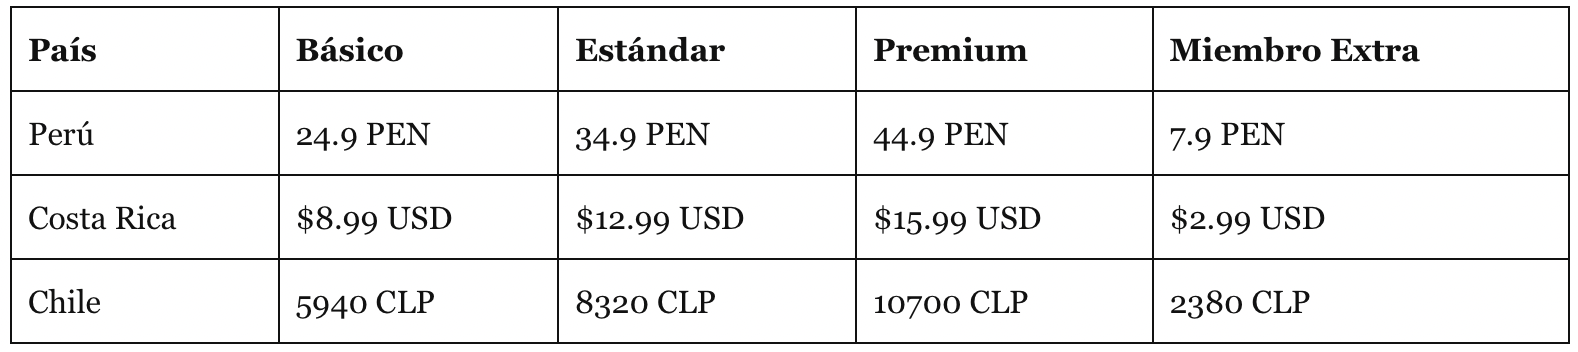 Tabla de precios en Perú, Costa Rica y Chile de Netflix. (foto: Variety)